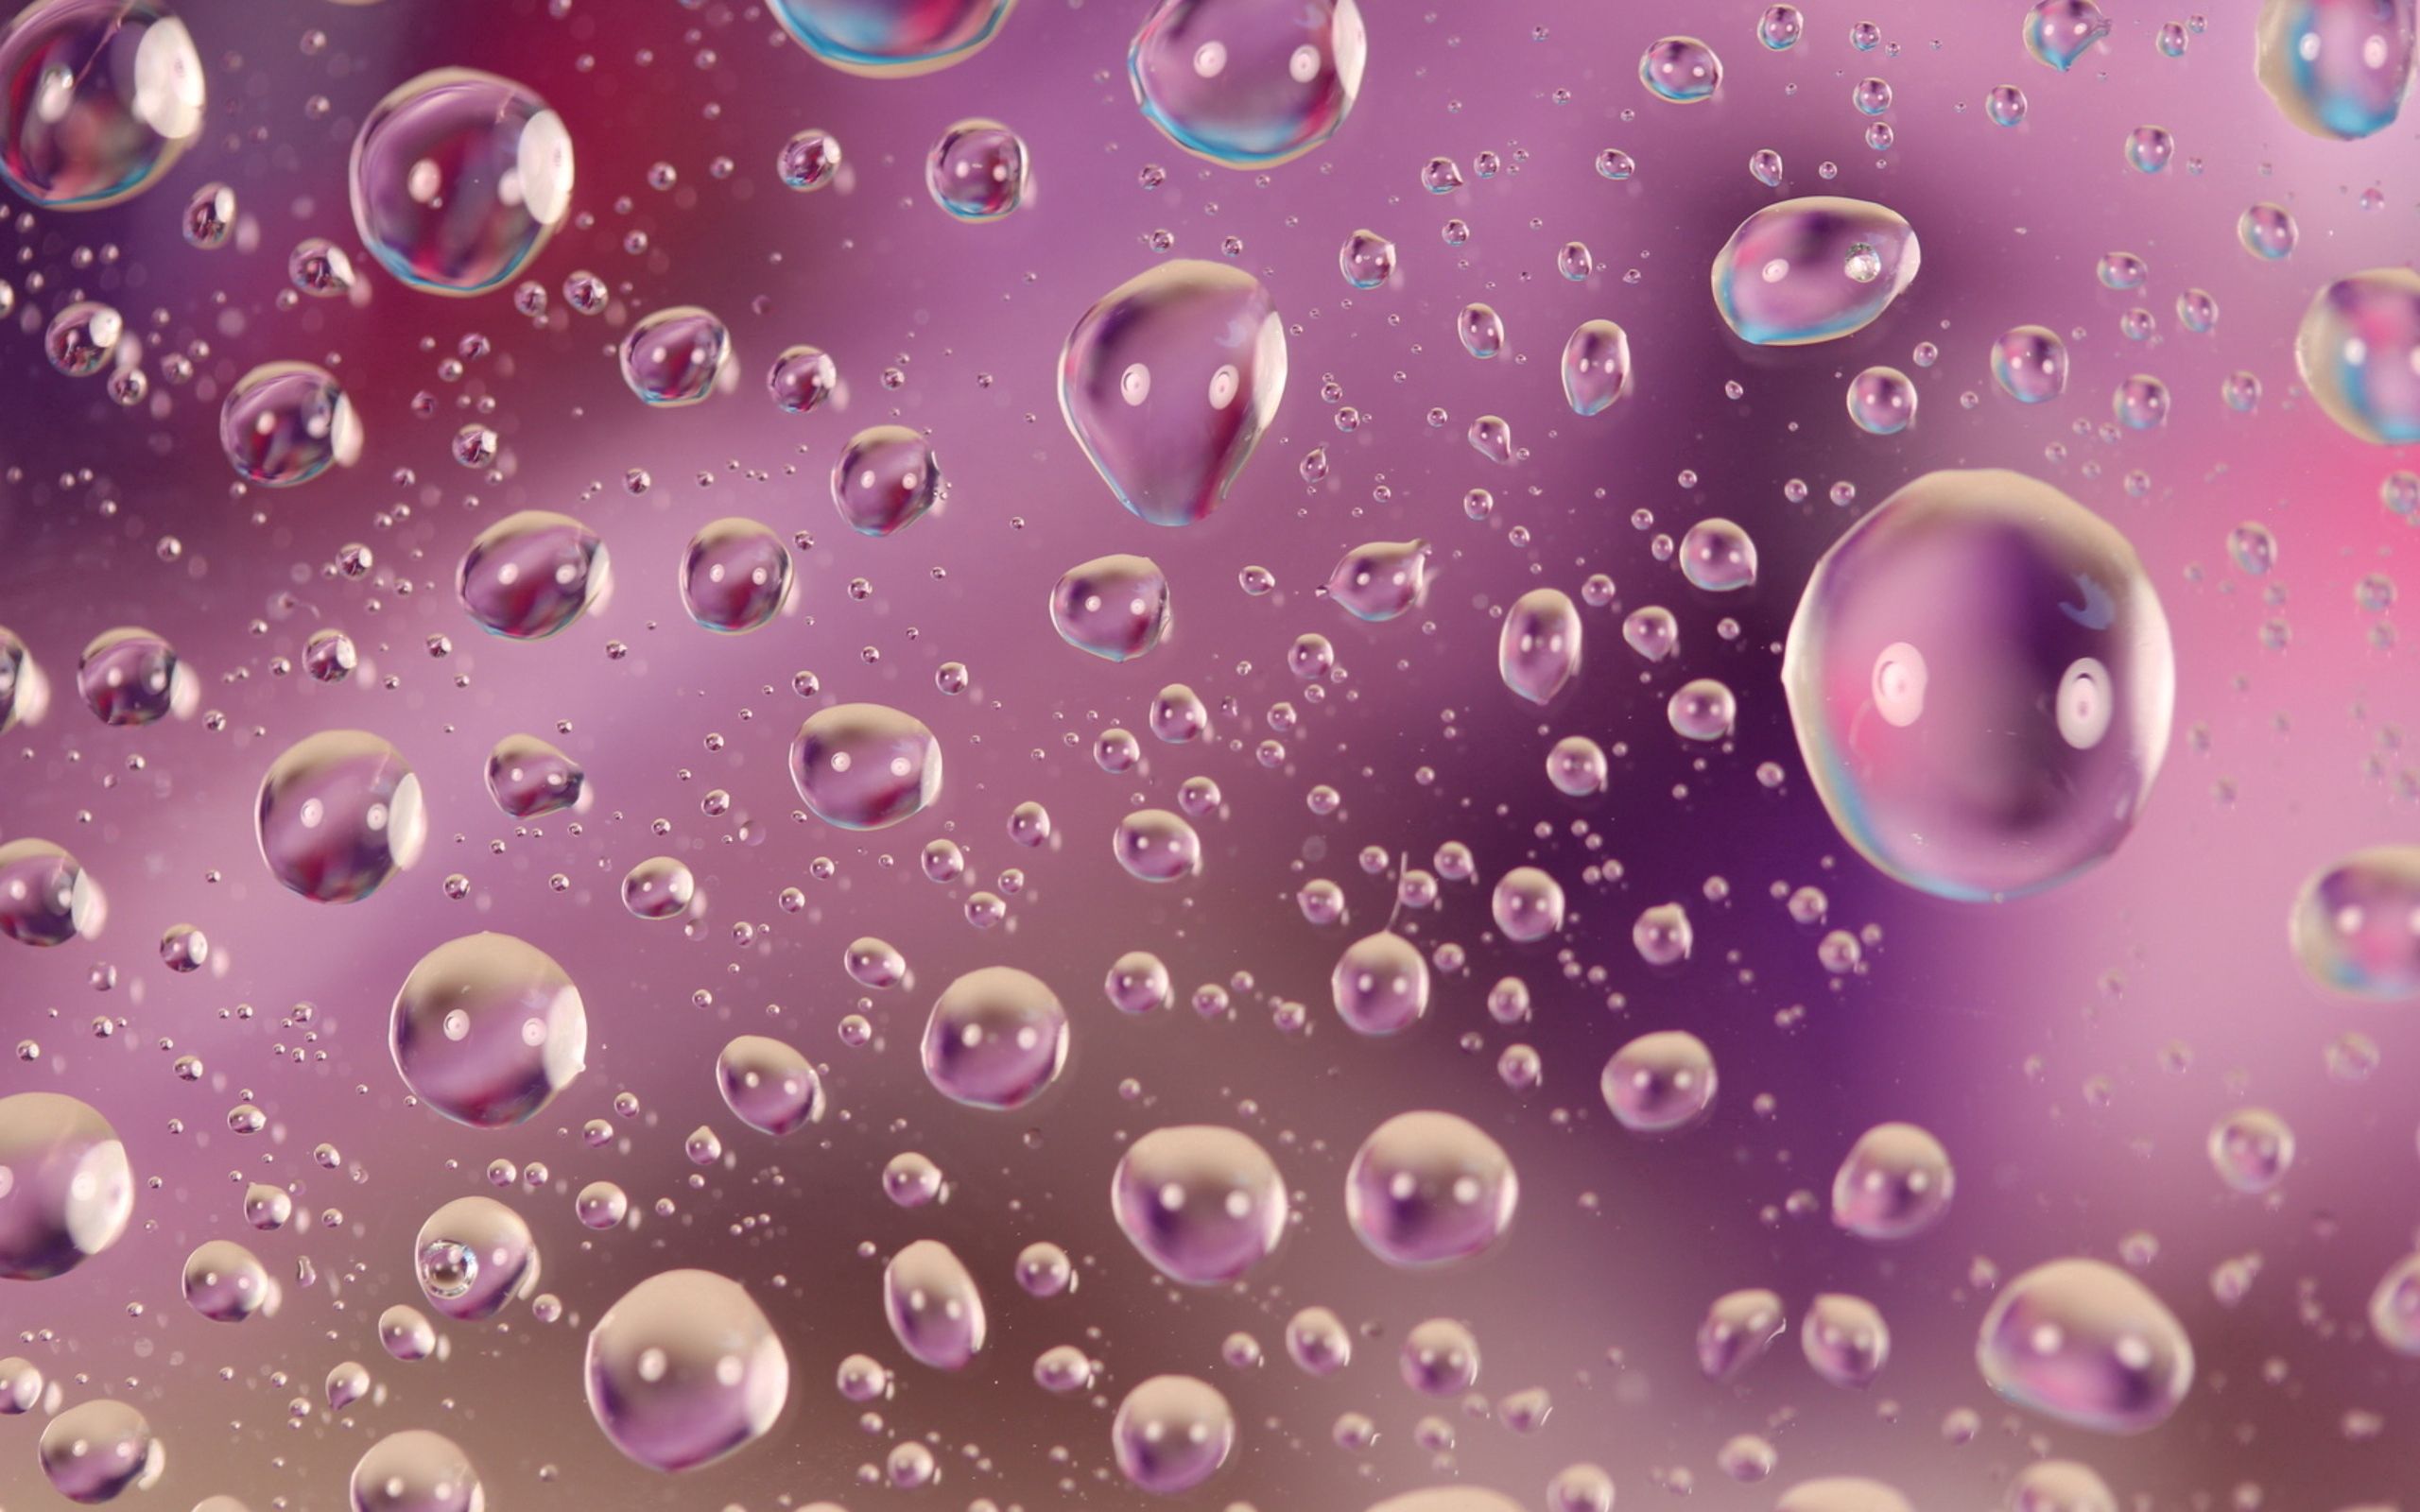  Bubbles HQ Background Images